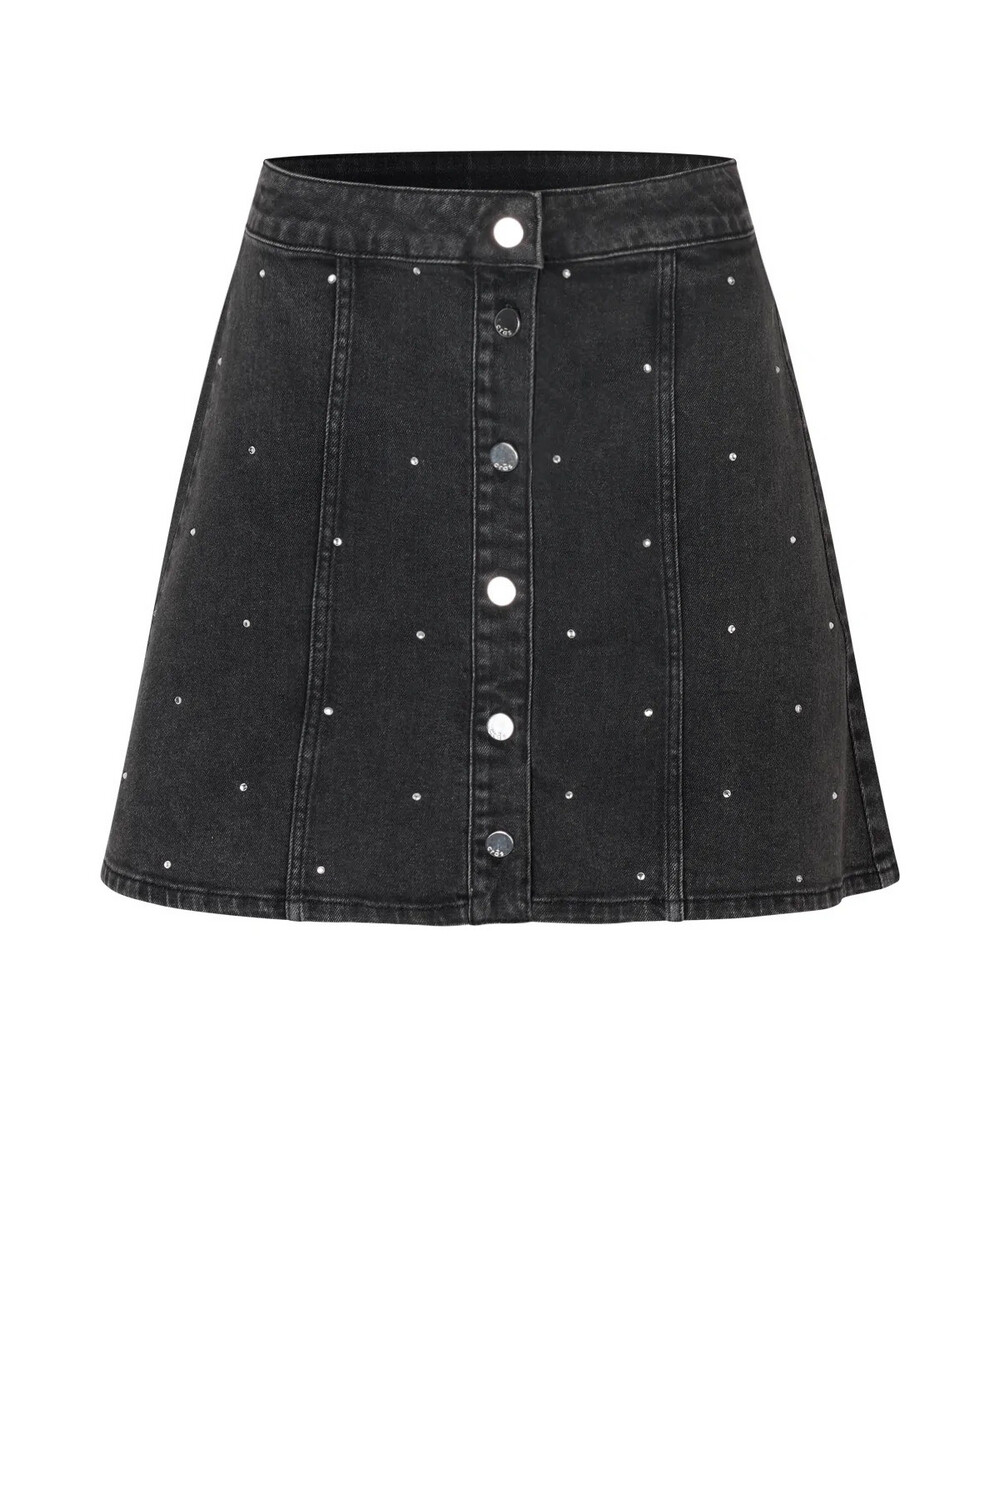 Washed Black Denim Sparkle Skirt